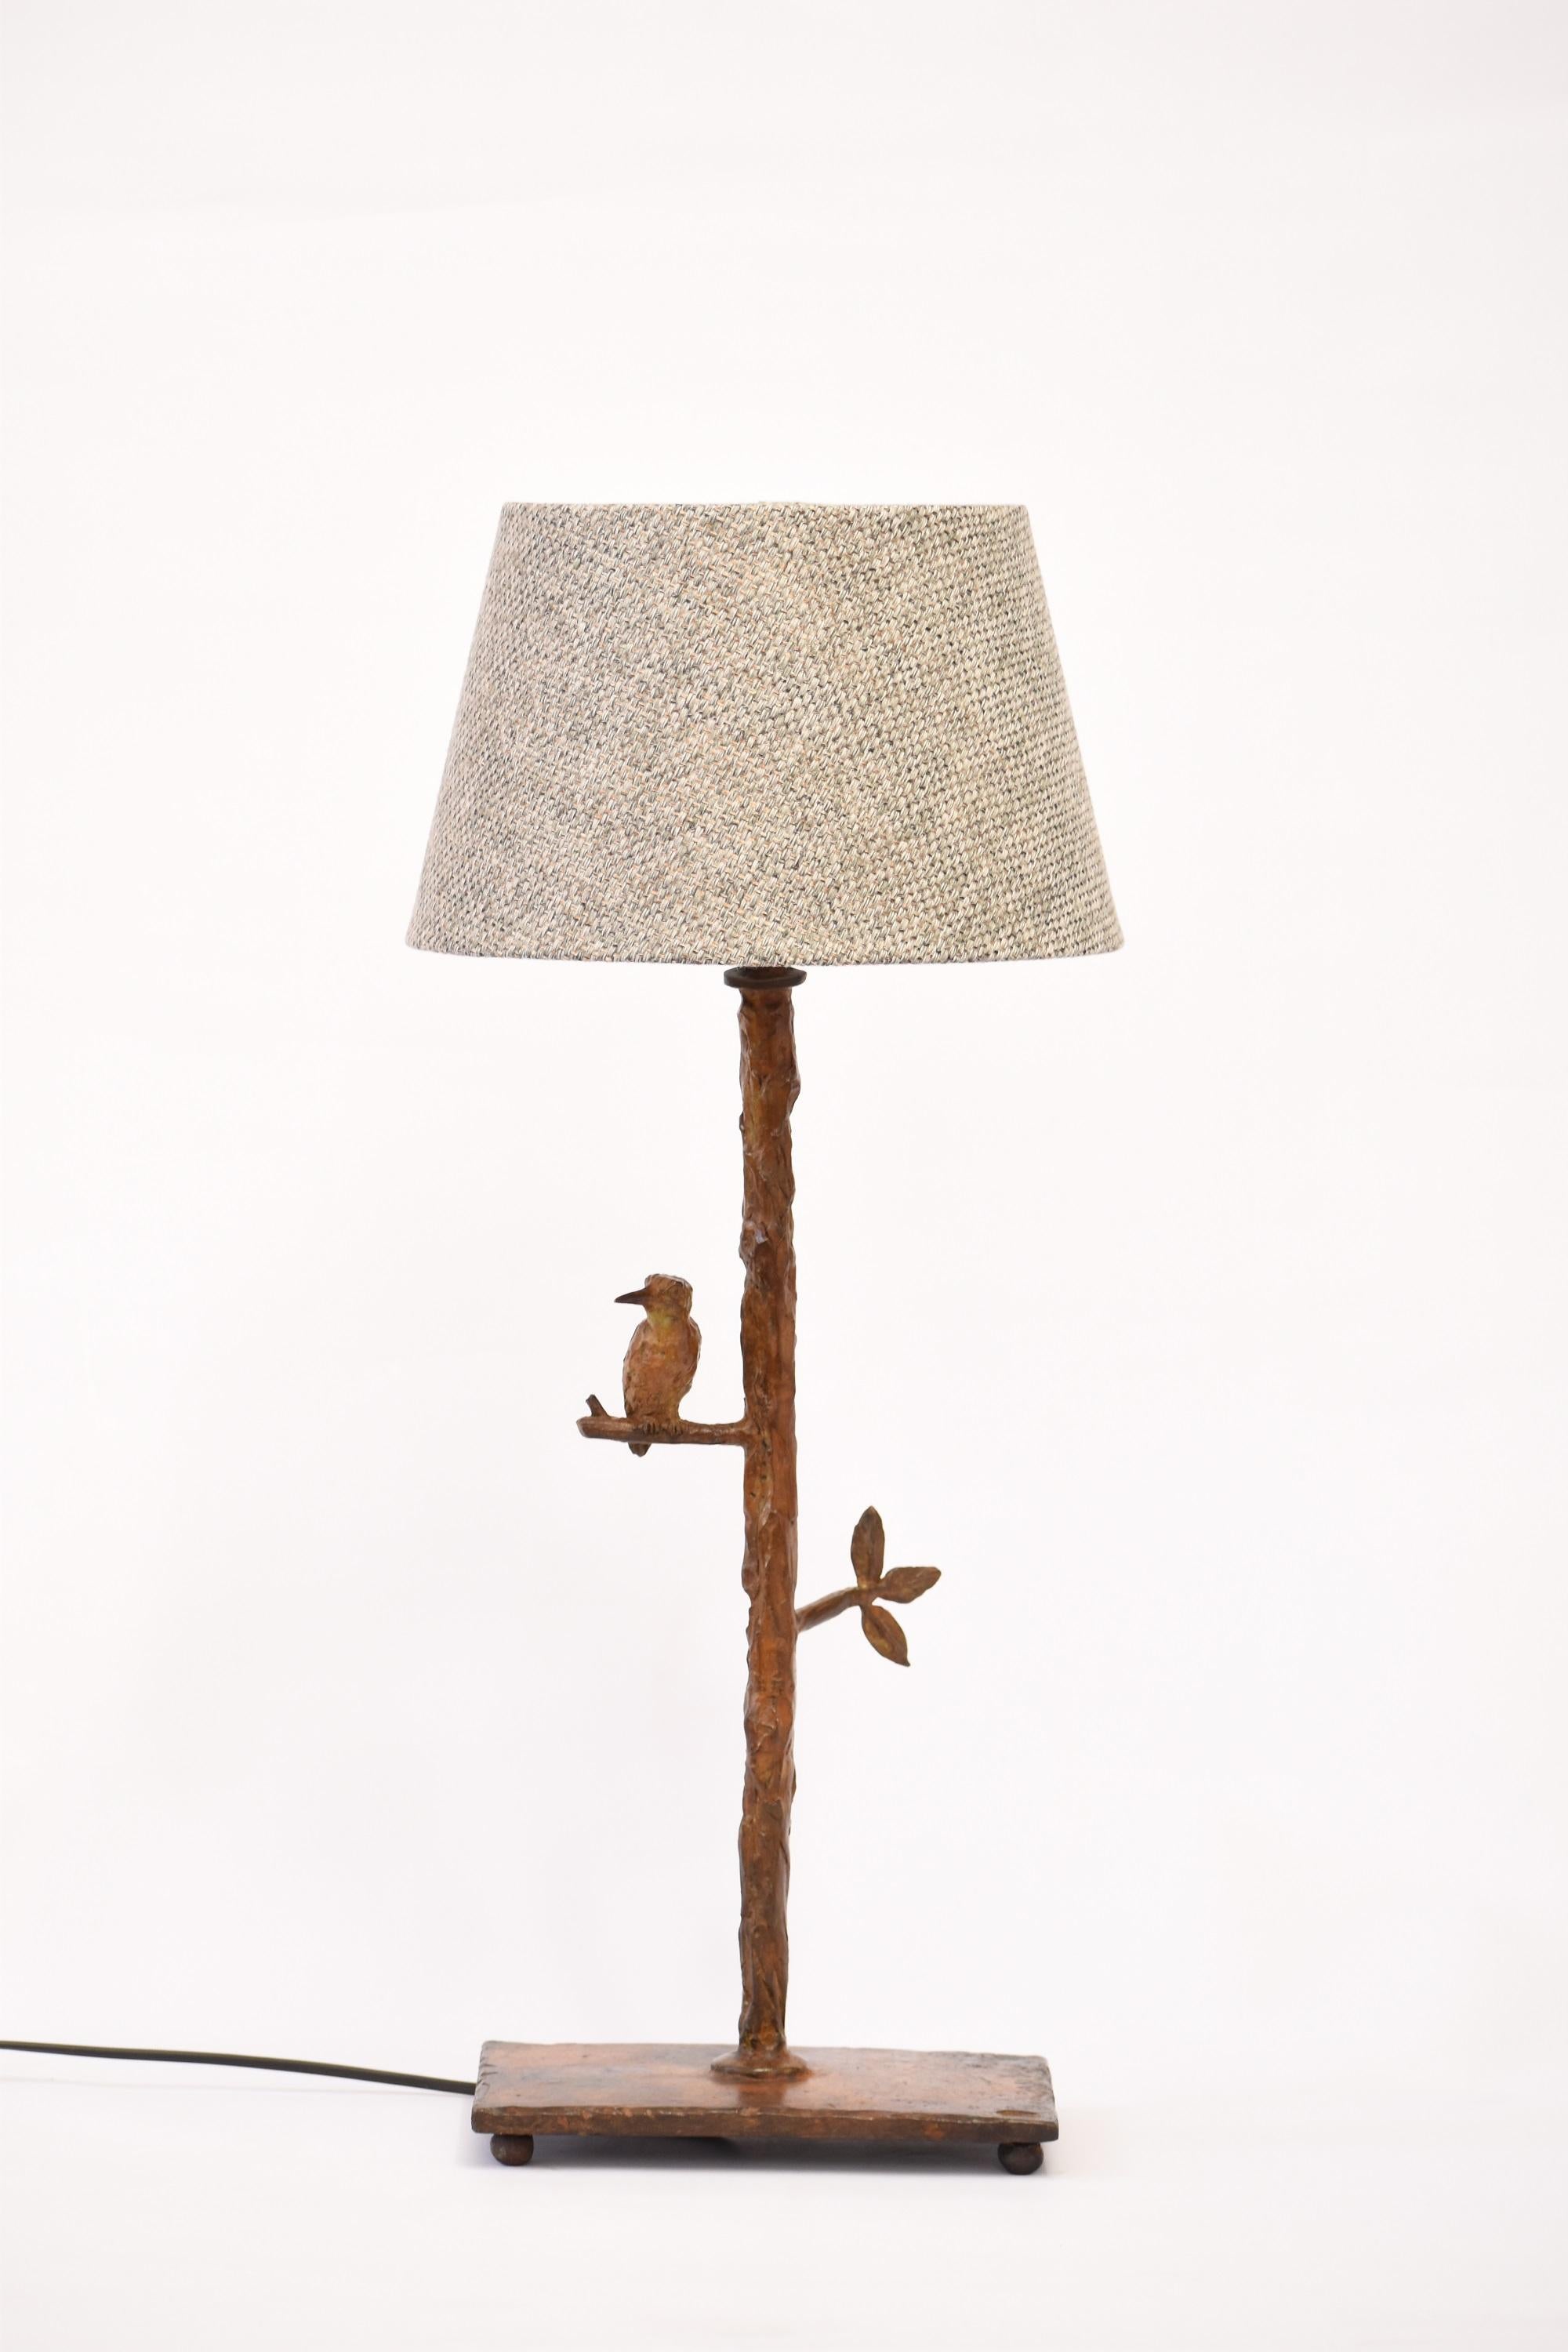 Lampe de table sculpturale Kingfisher fabriquée à la main en bronze coulé selon la méthode de la cire perdue. Fait à la main - sculpté, moulé, coulé et fini individuellement à la main, ce qui rend chaque pièce unique.  Présente un Kingfisher en